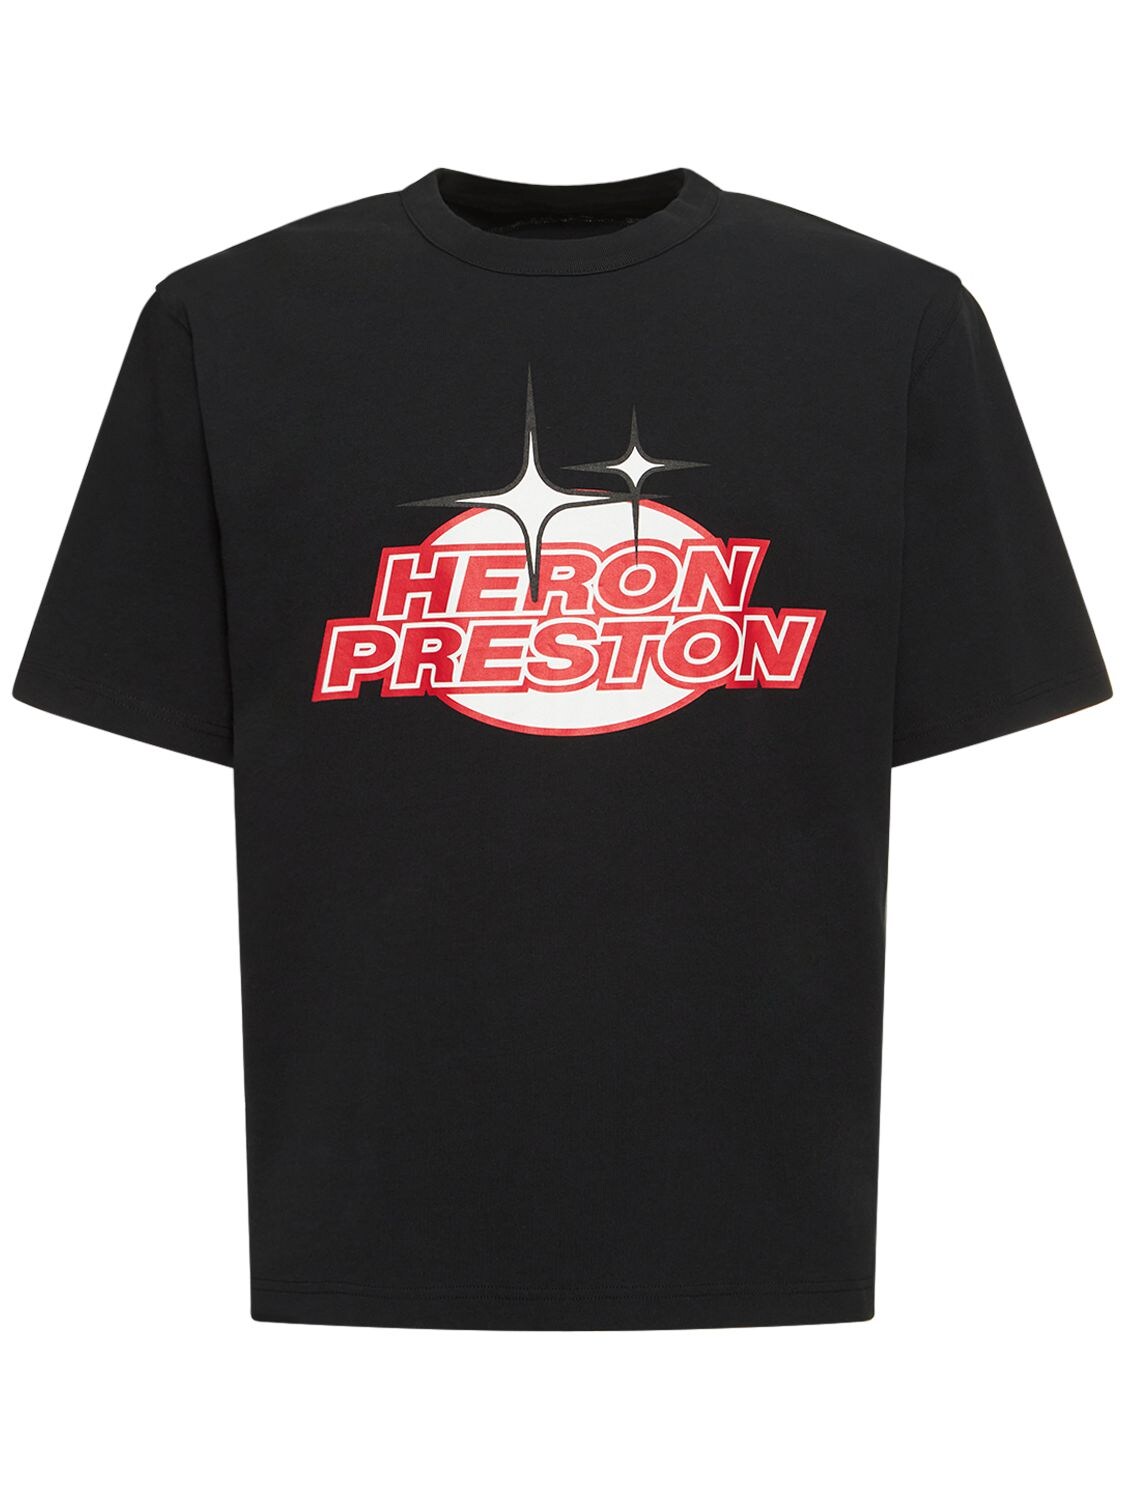 Lvr Exclusive - T-shirt En Jersey De Coton - HERON PRESTON - Modalova